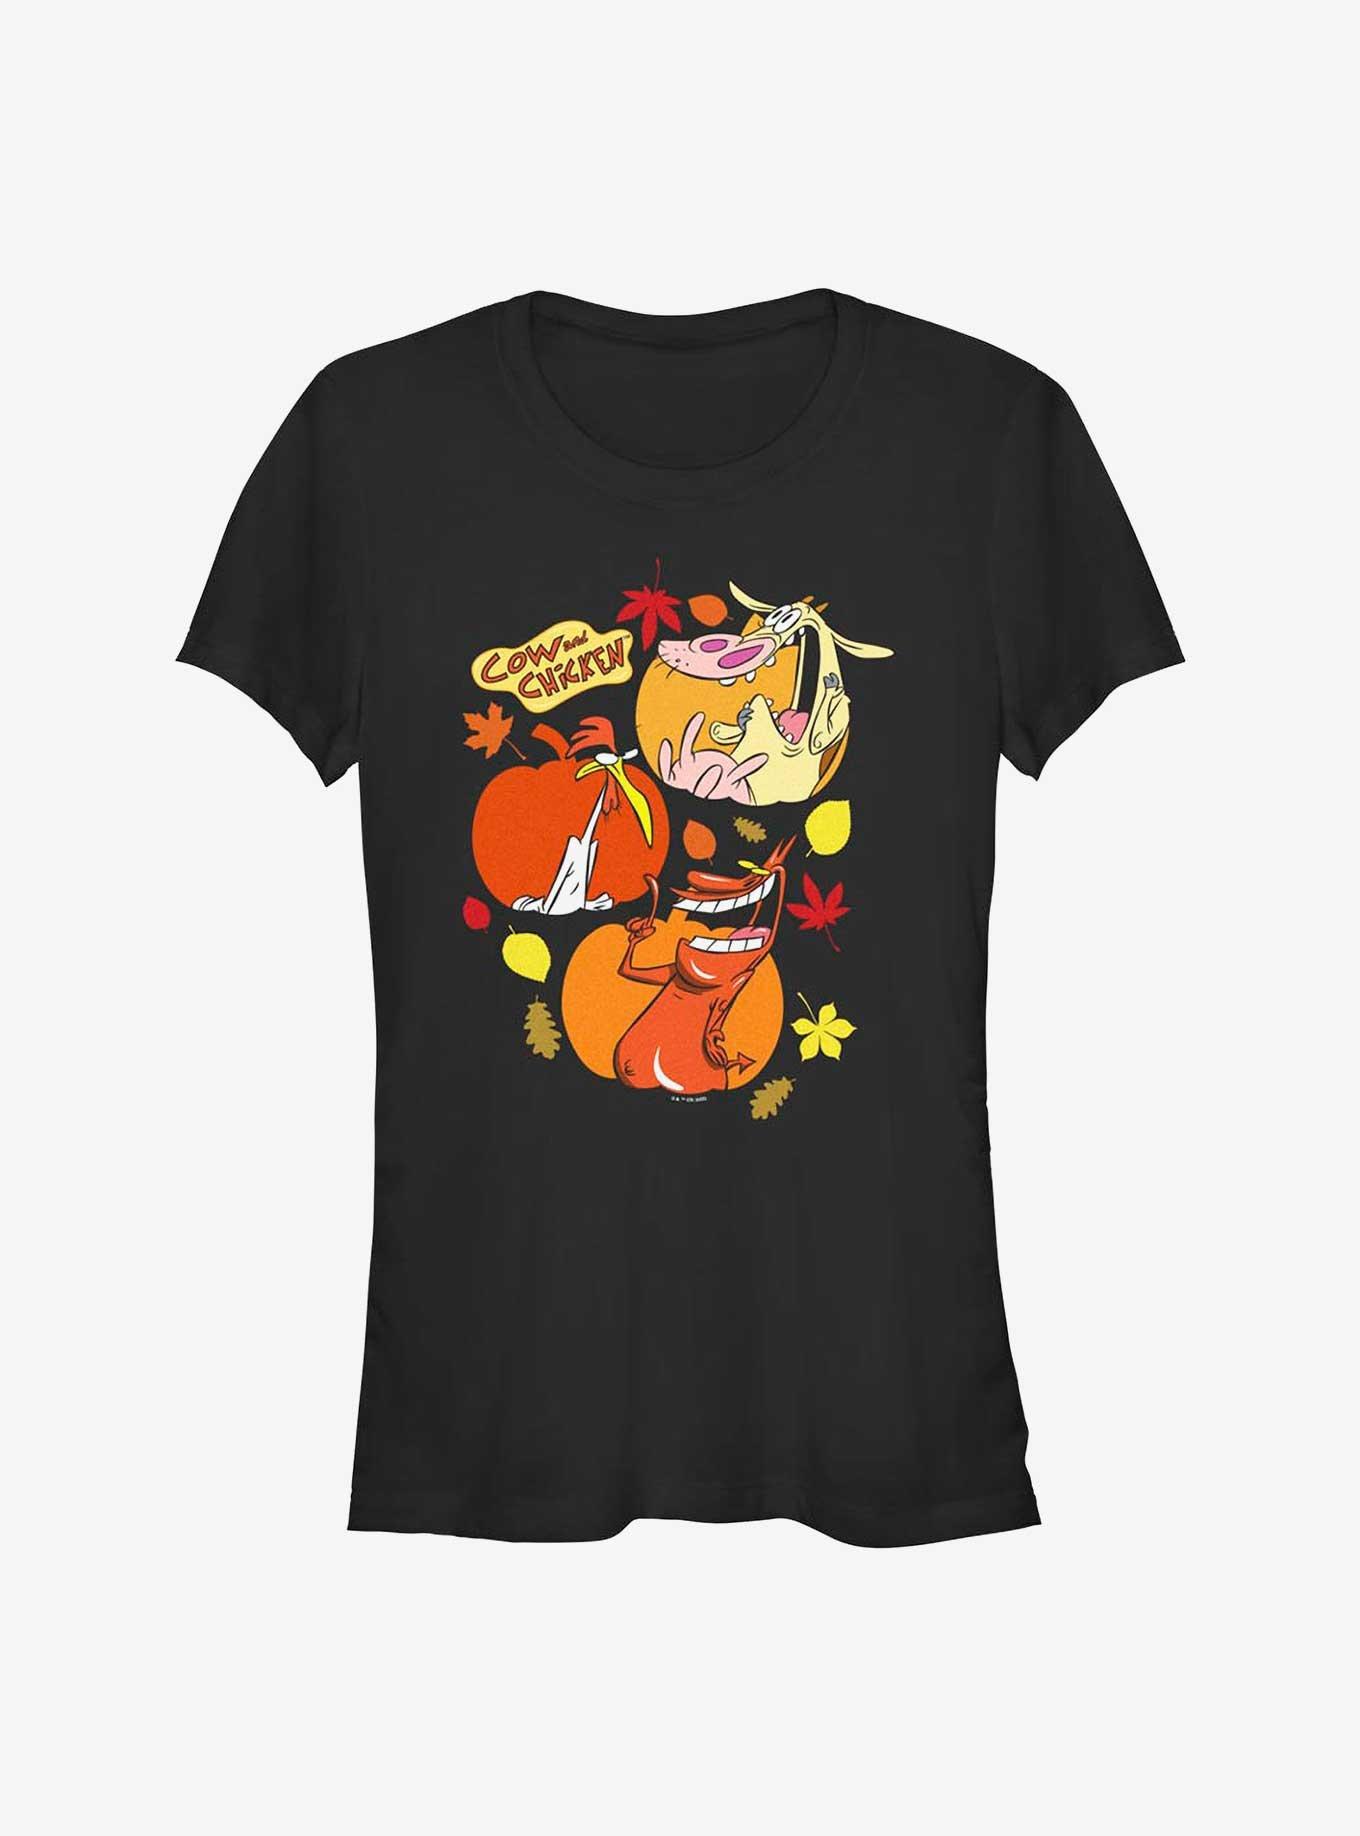 Cartoon Network Cow and Chicken Thankful Pumpkins Girls T-Shirt